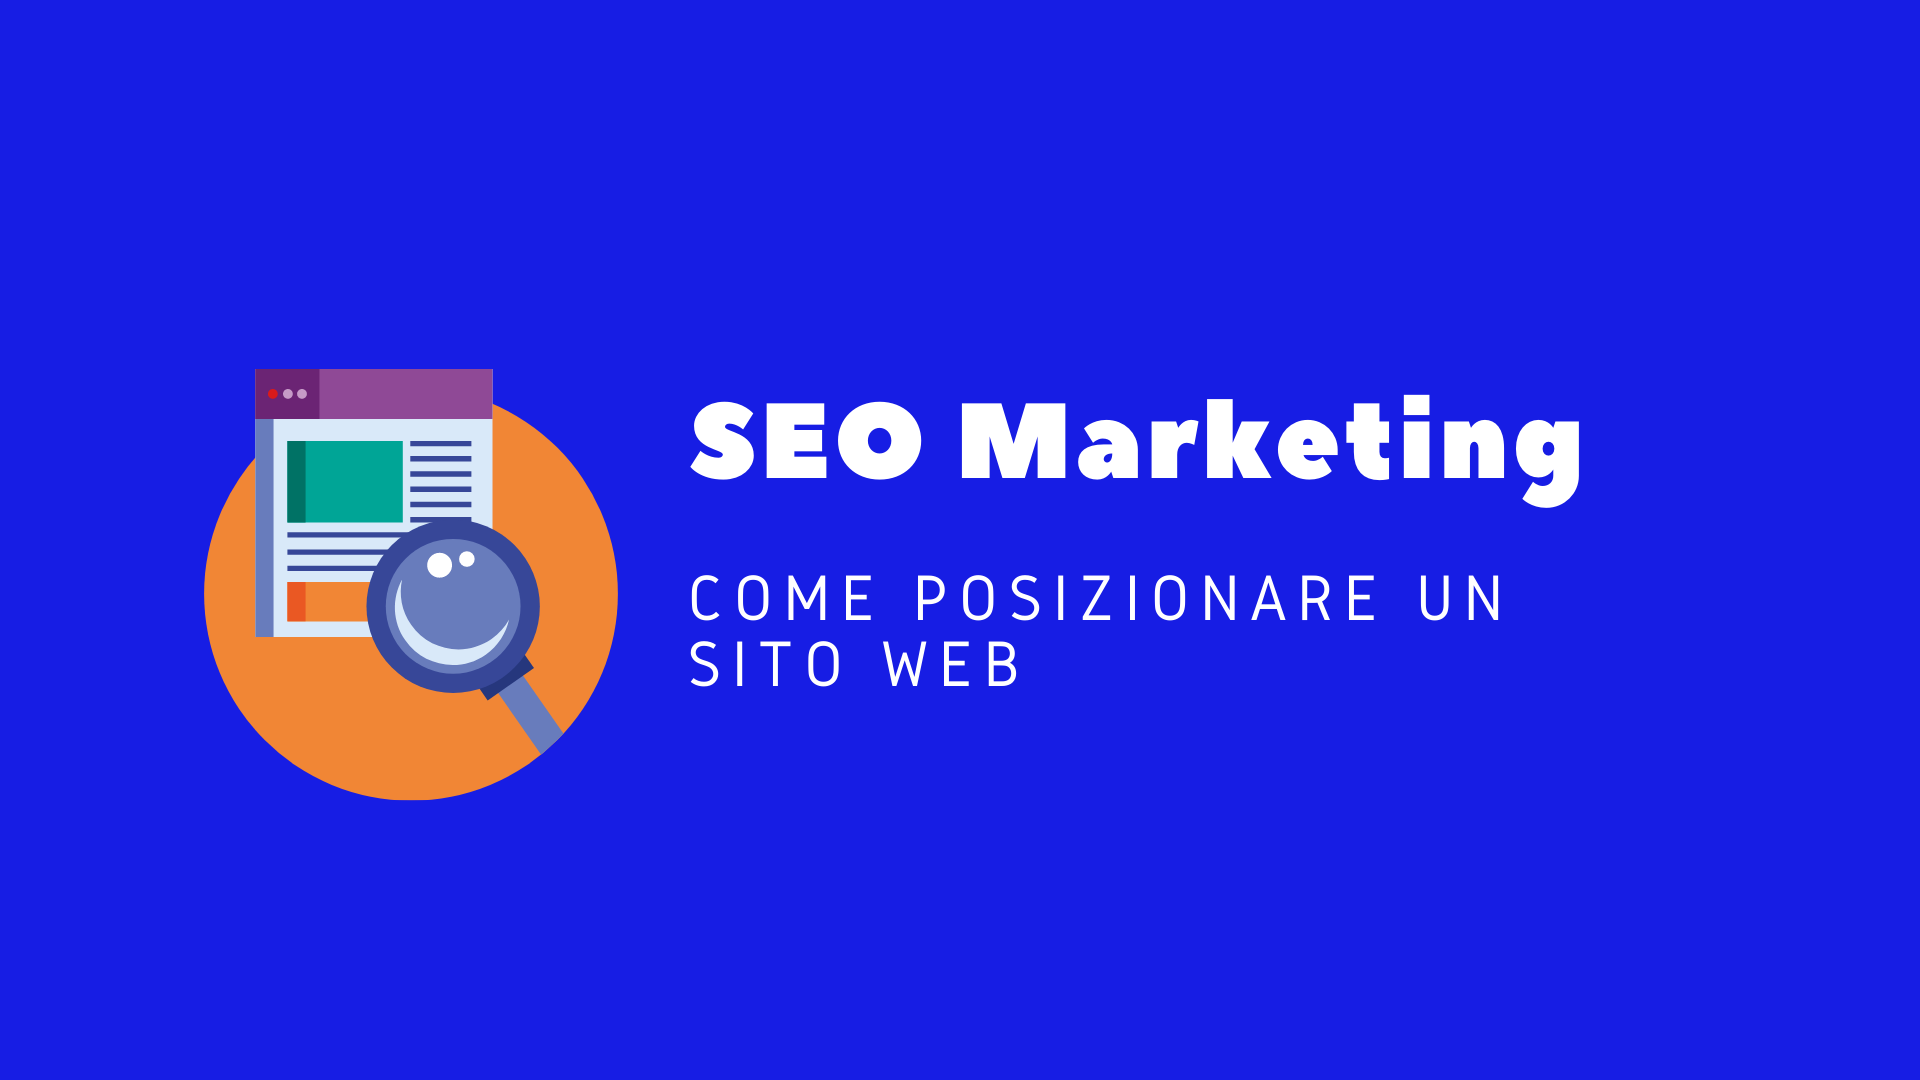 SEO Marketing come posizionare un sito web sui motori di ricerca, Marco Tarantino Web